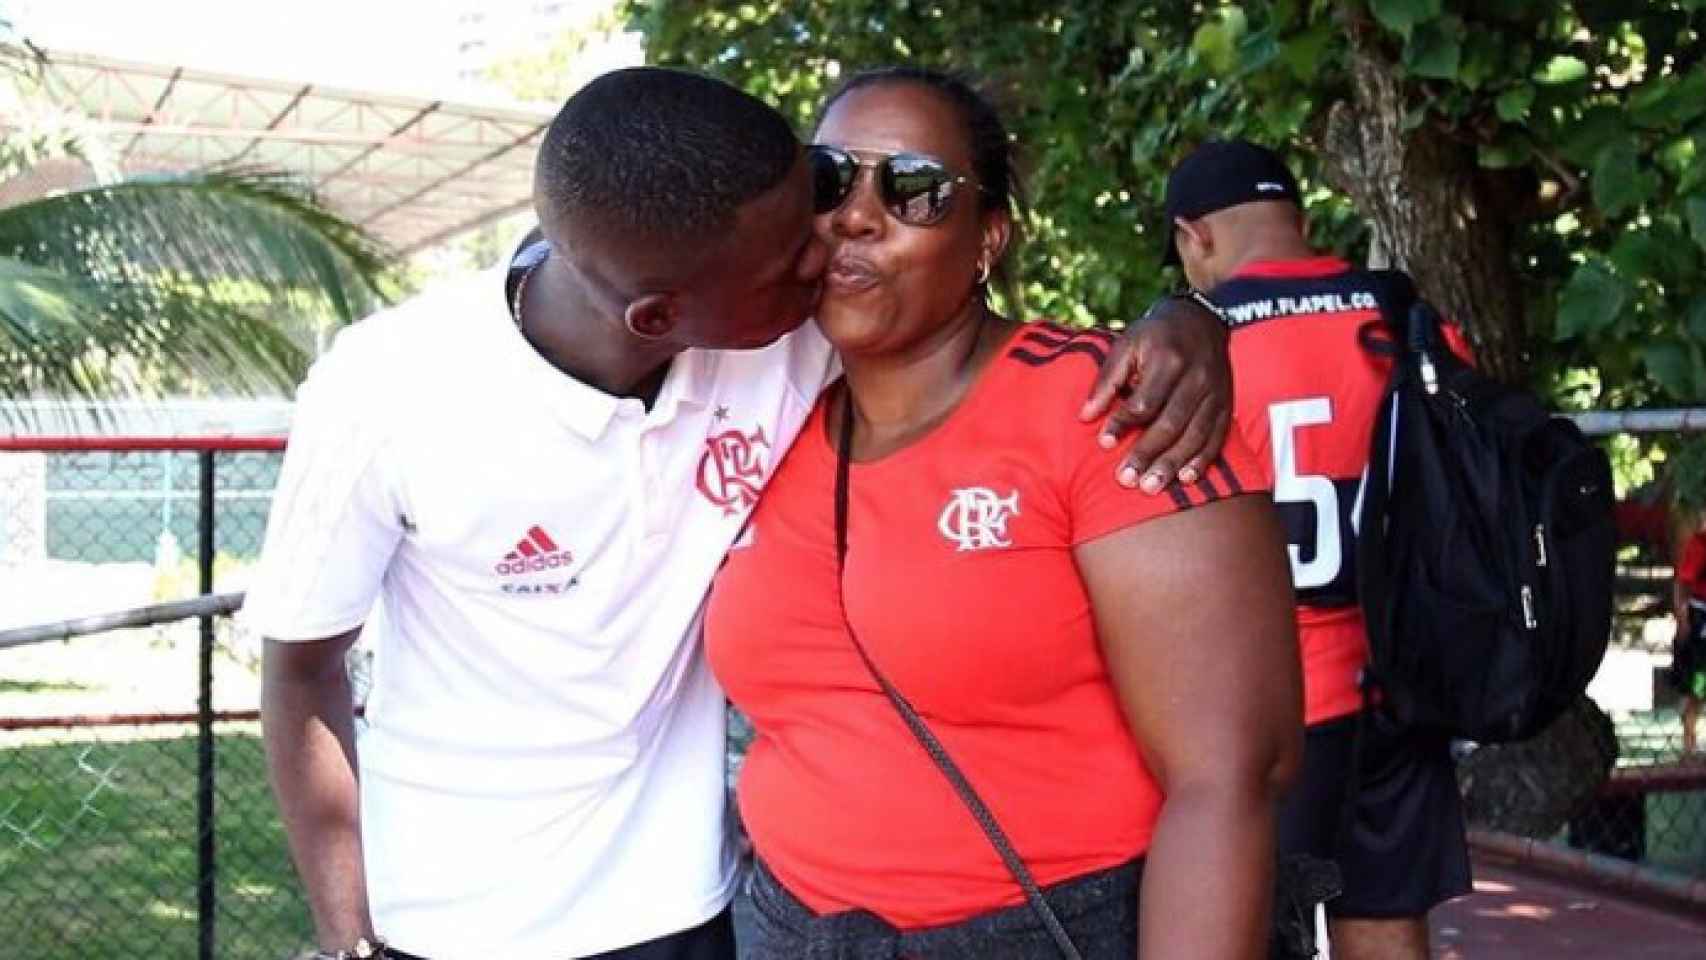 El futbolista besa a su madre, Fernanda, cuando militaba en los juveniles del Flamengo.